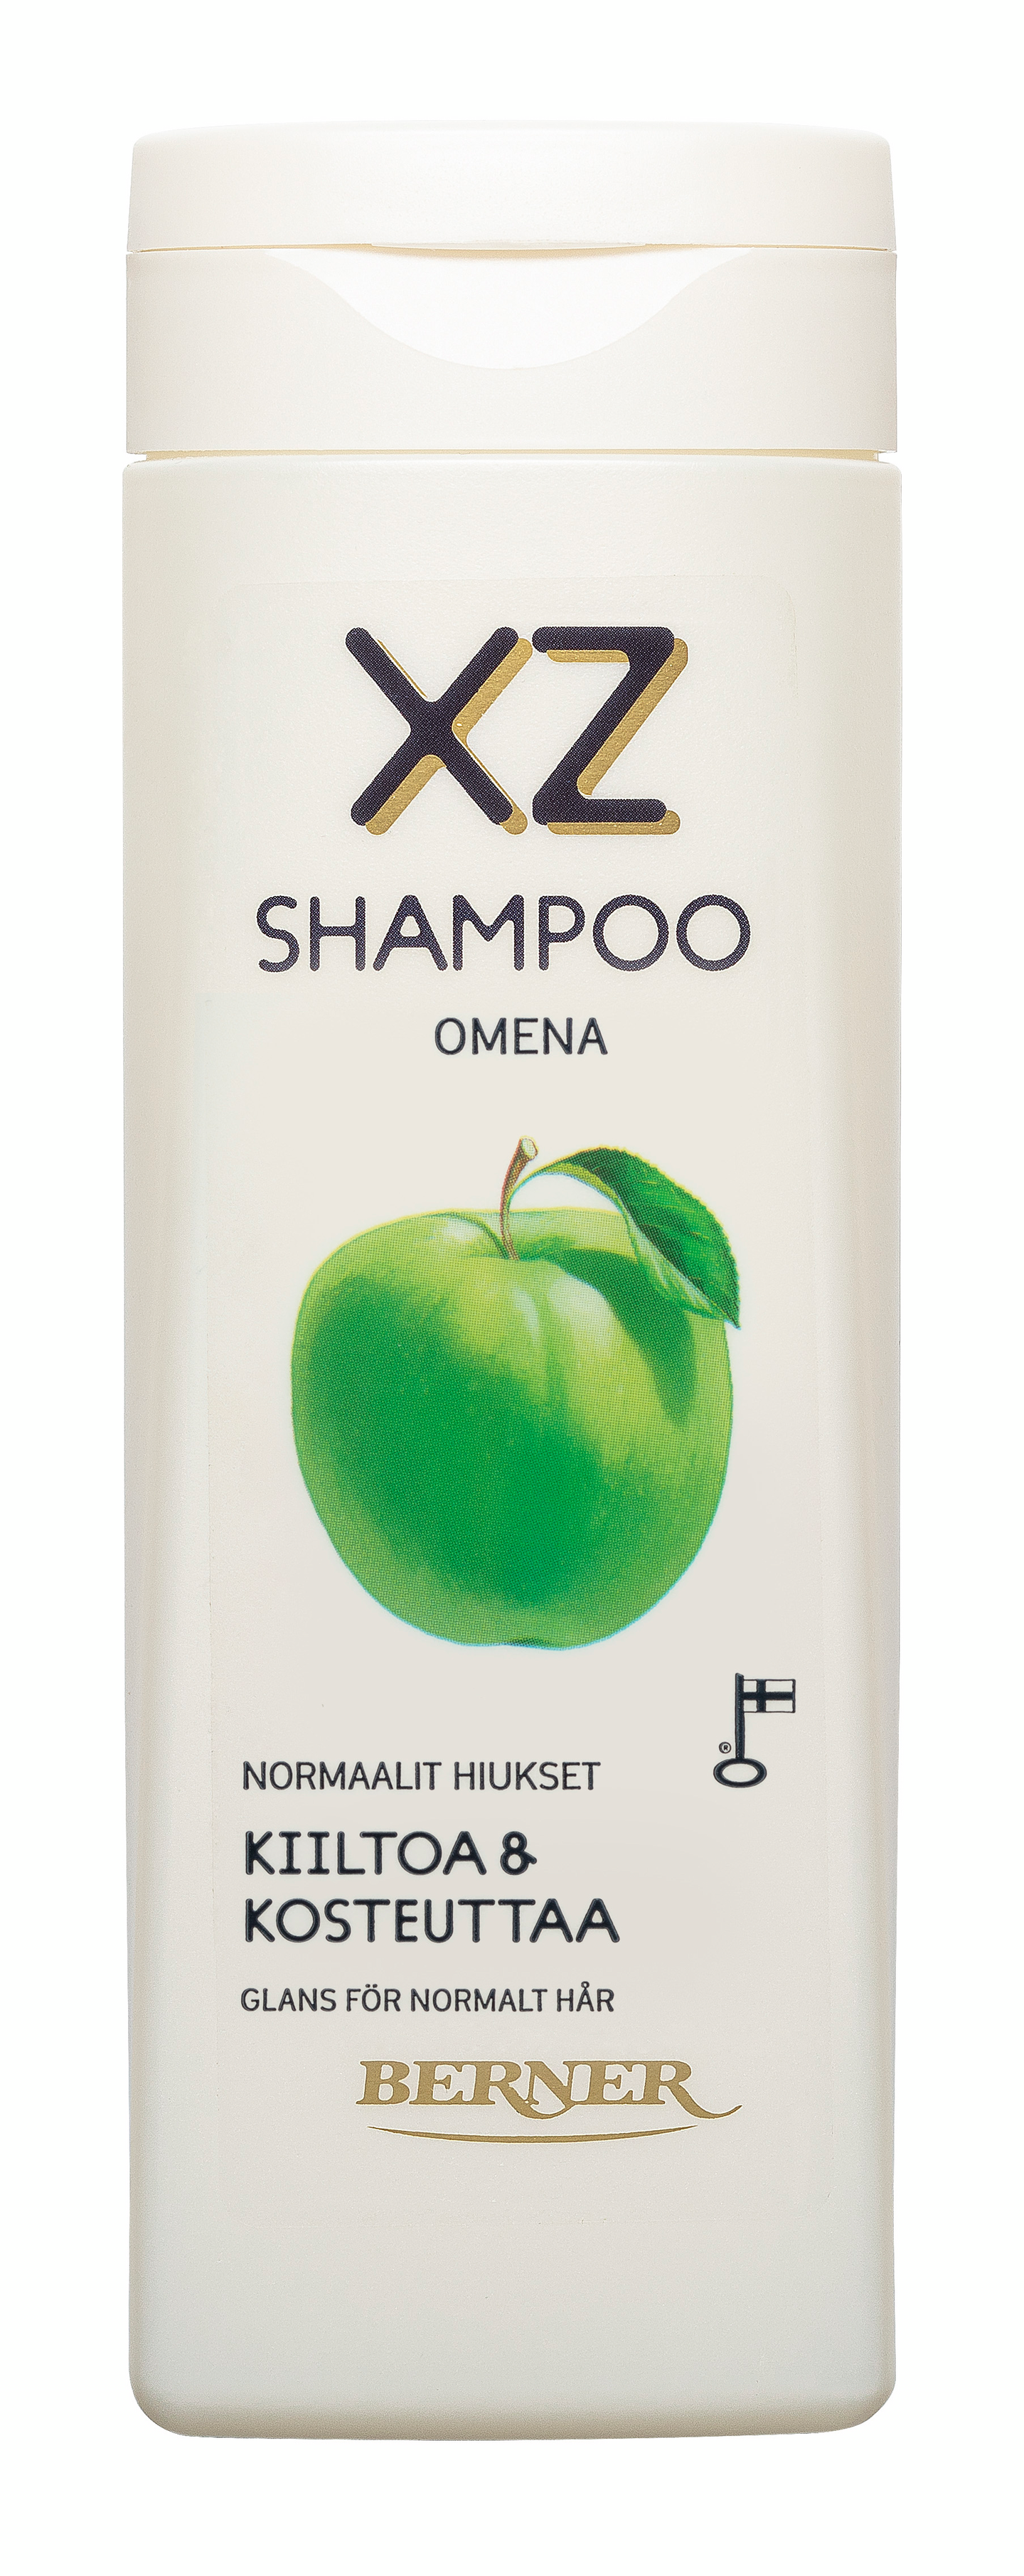 XZ shampoo 250ml Aito Omena